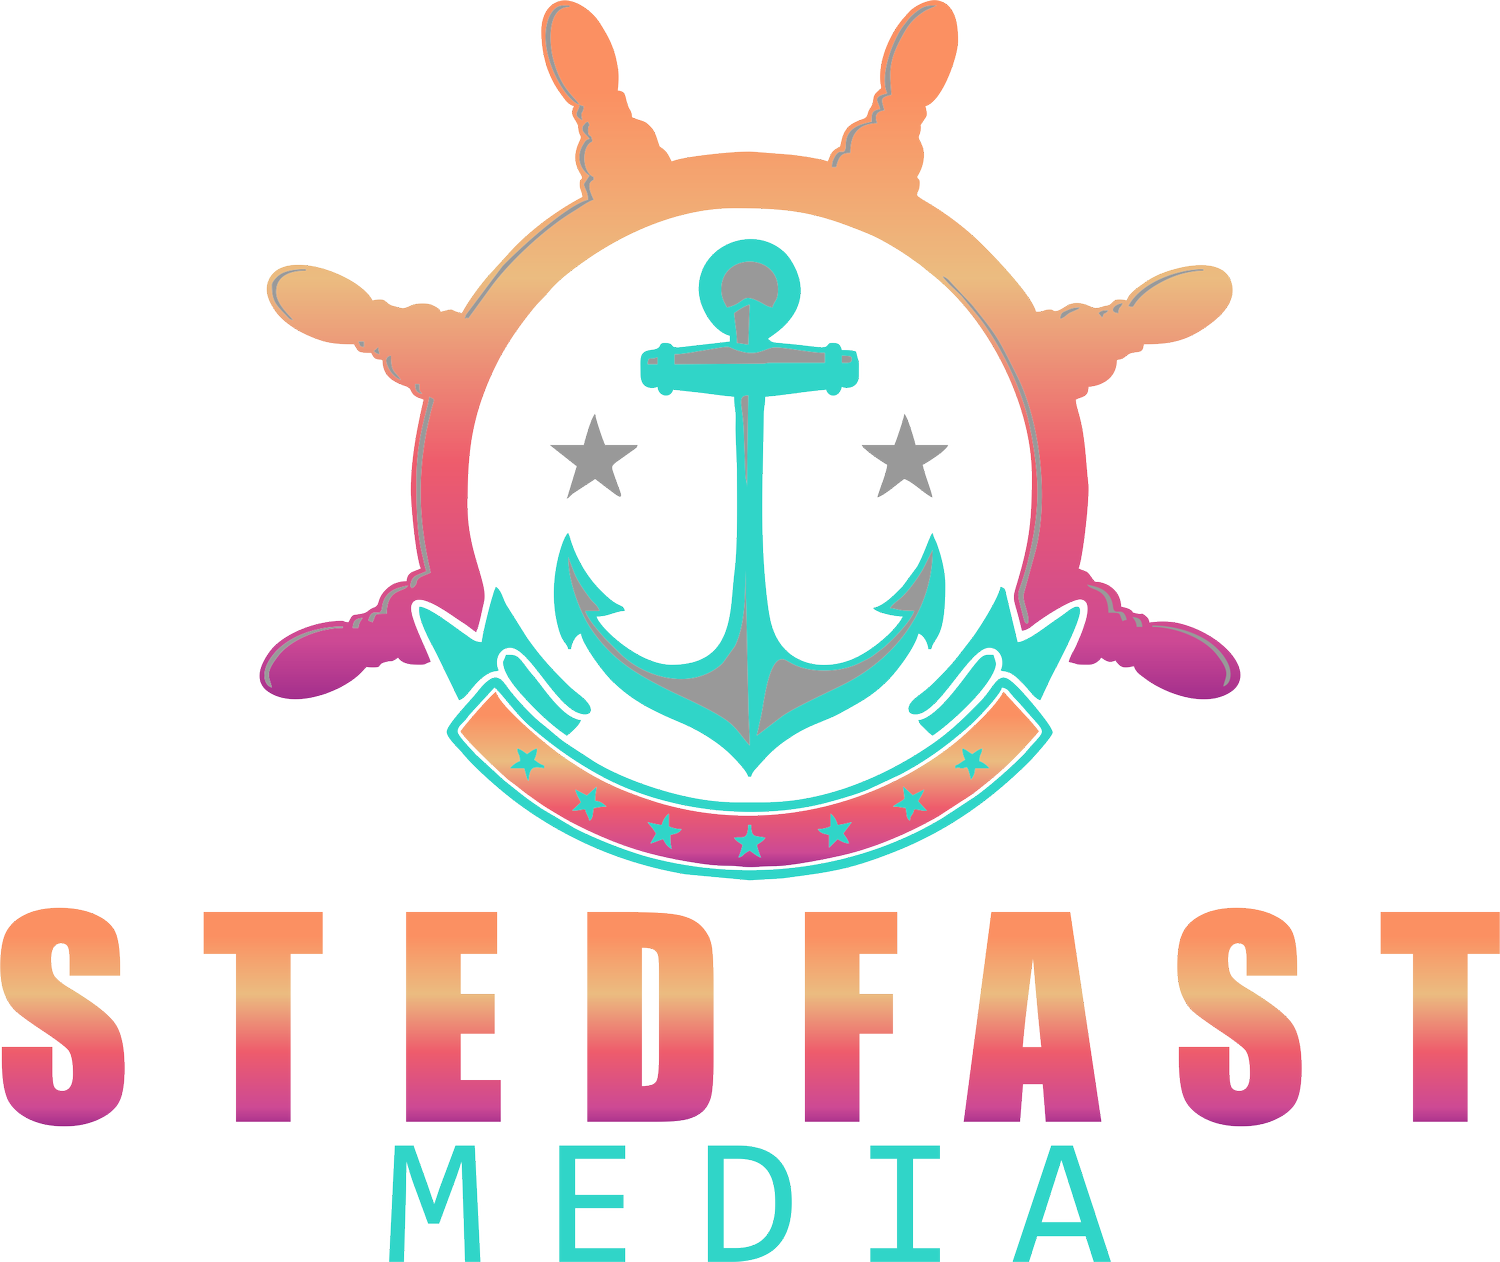 Stedfast Media